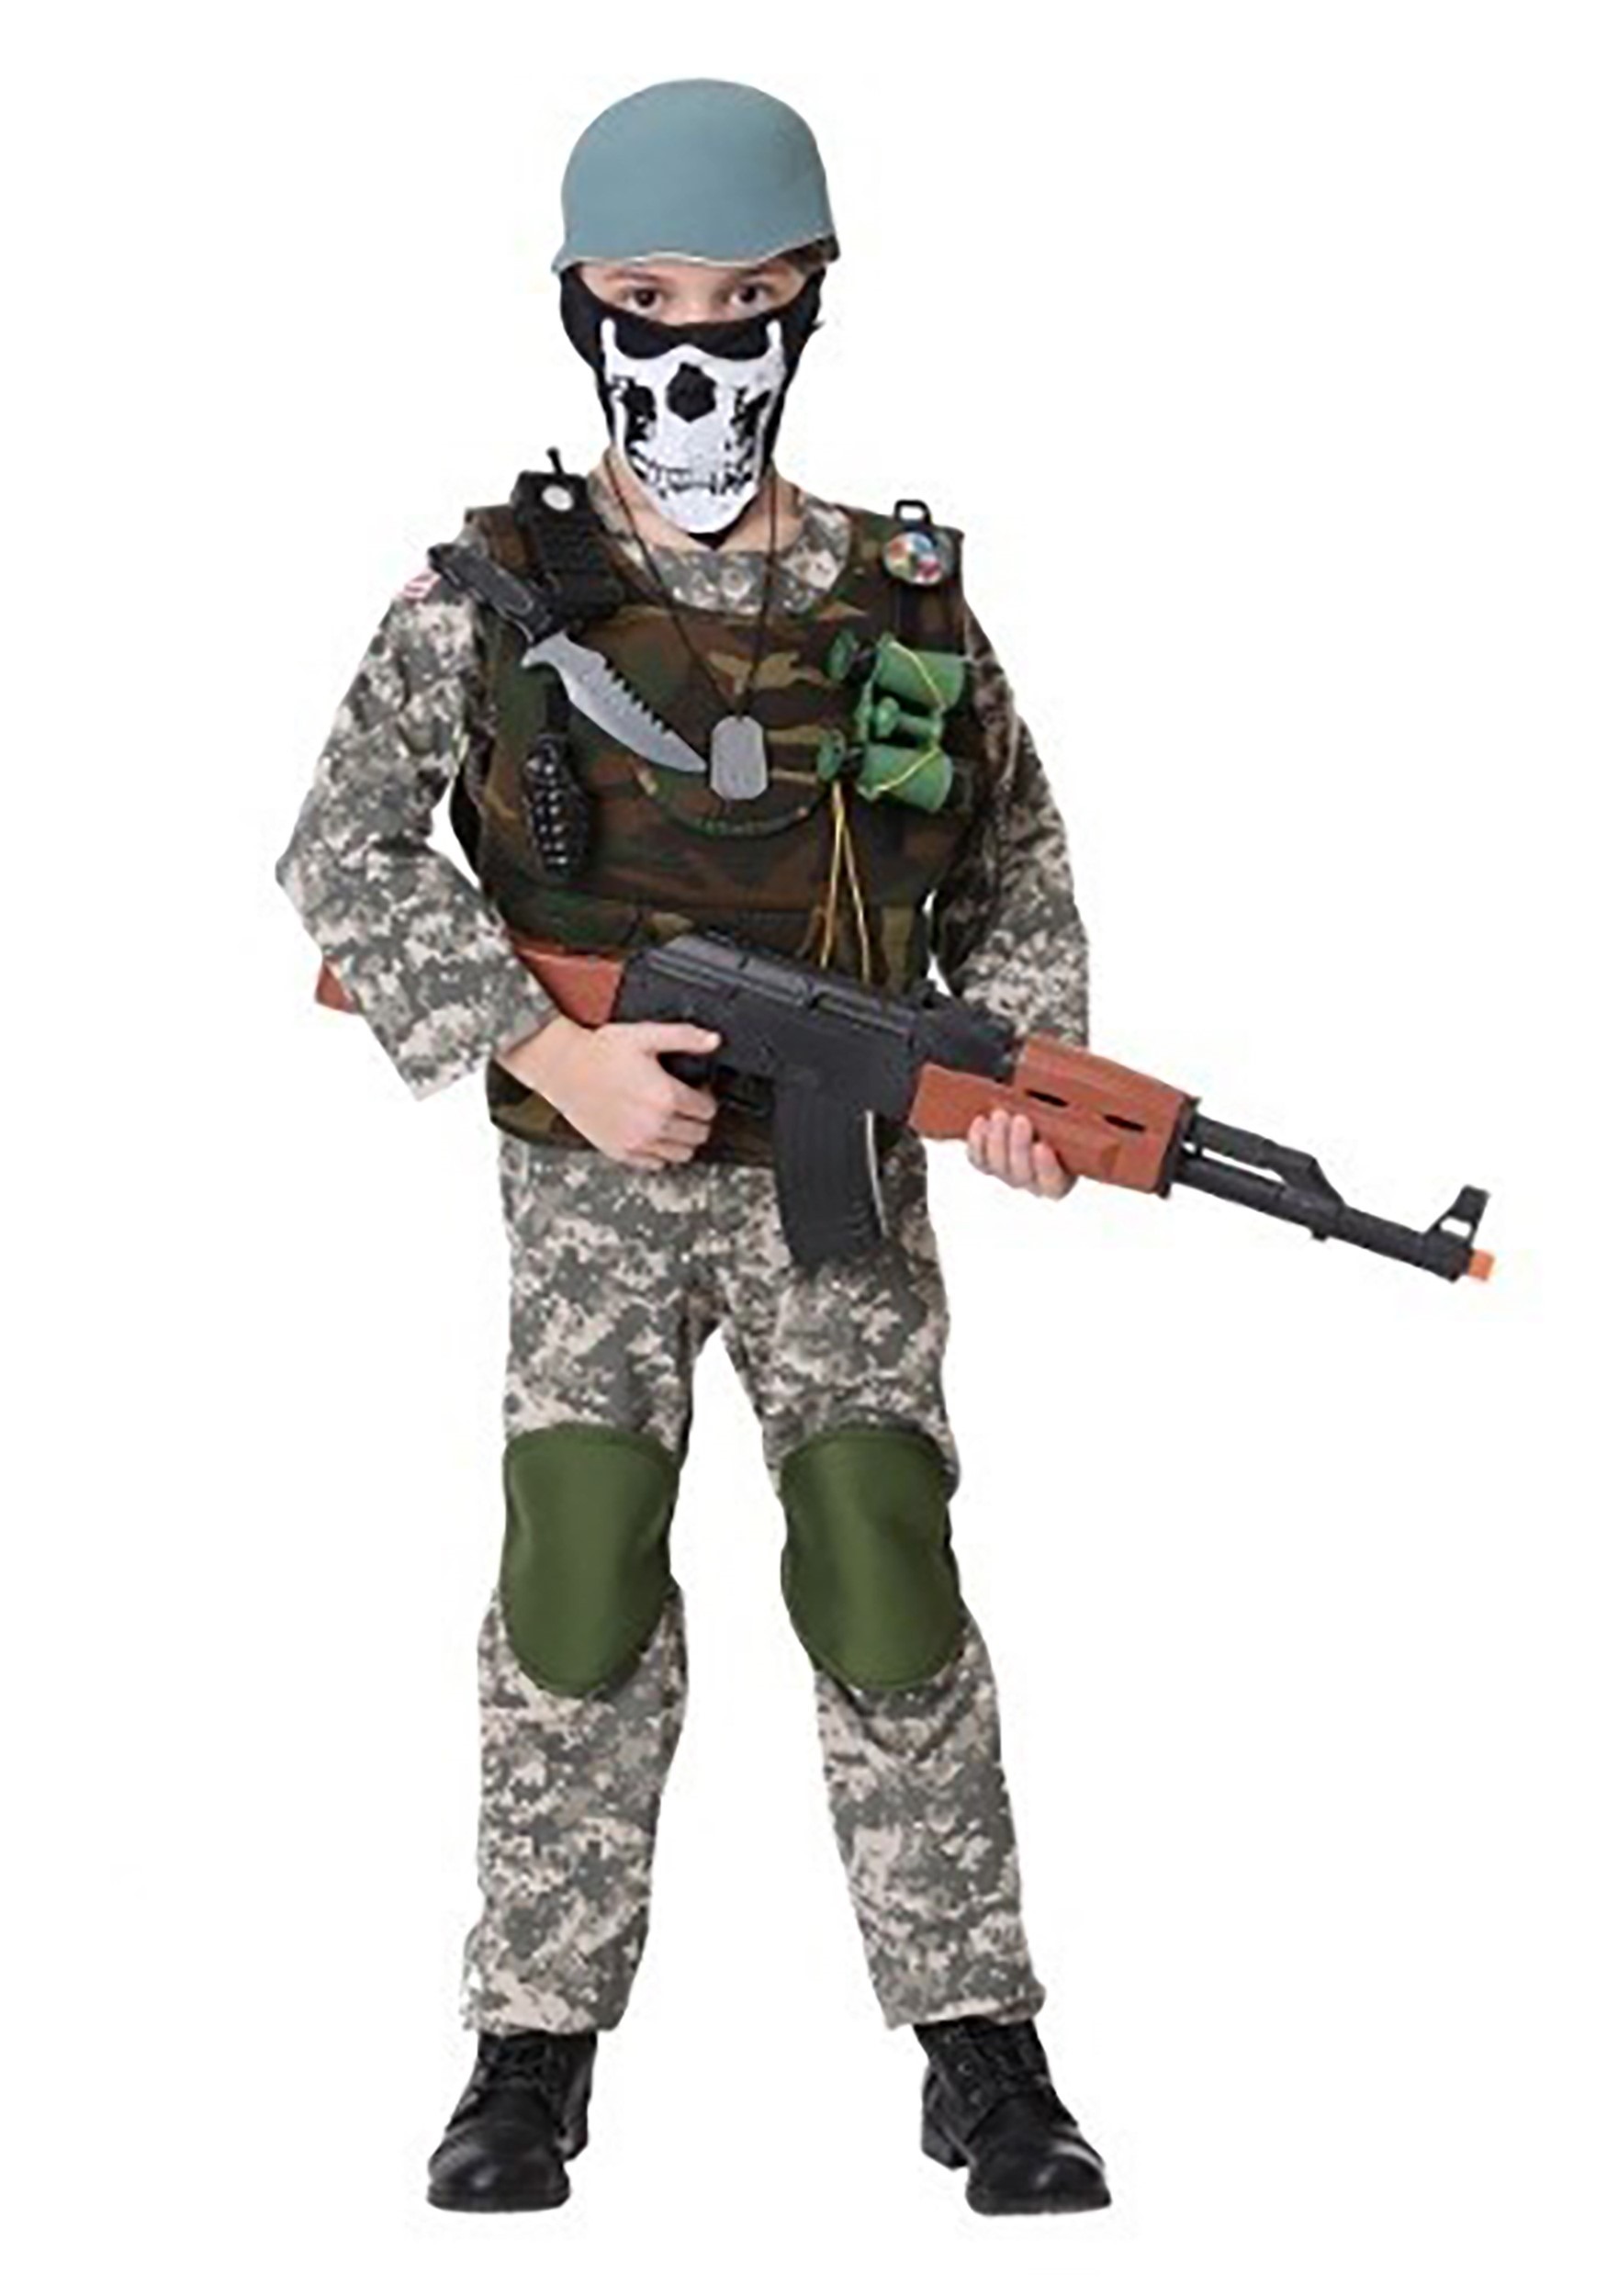 Disfraz de soldado con camuflaje para hombre